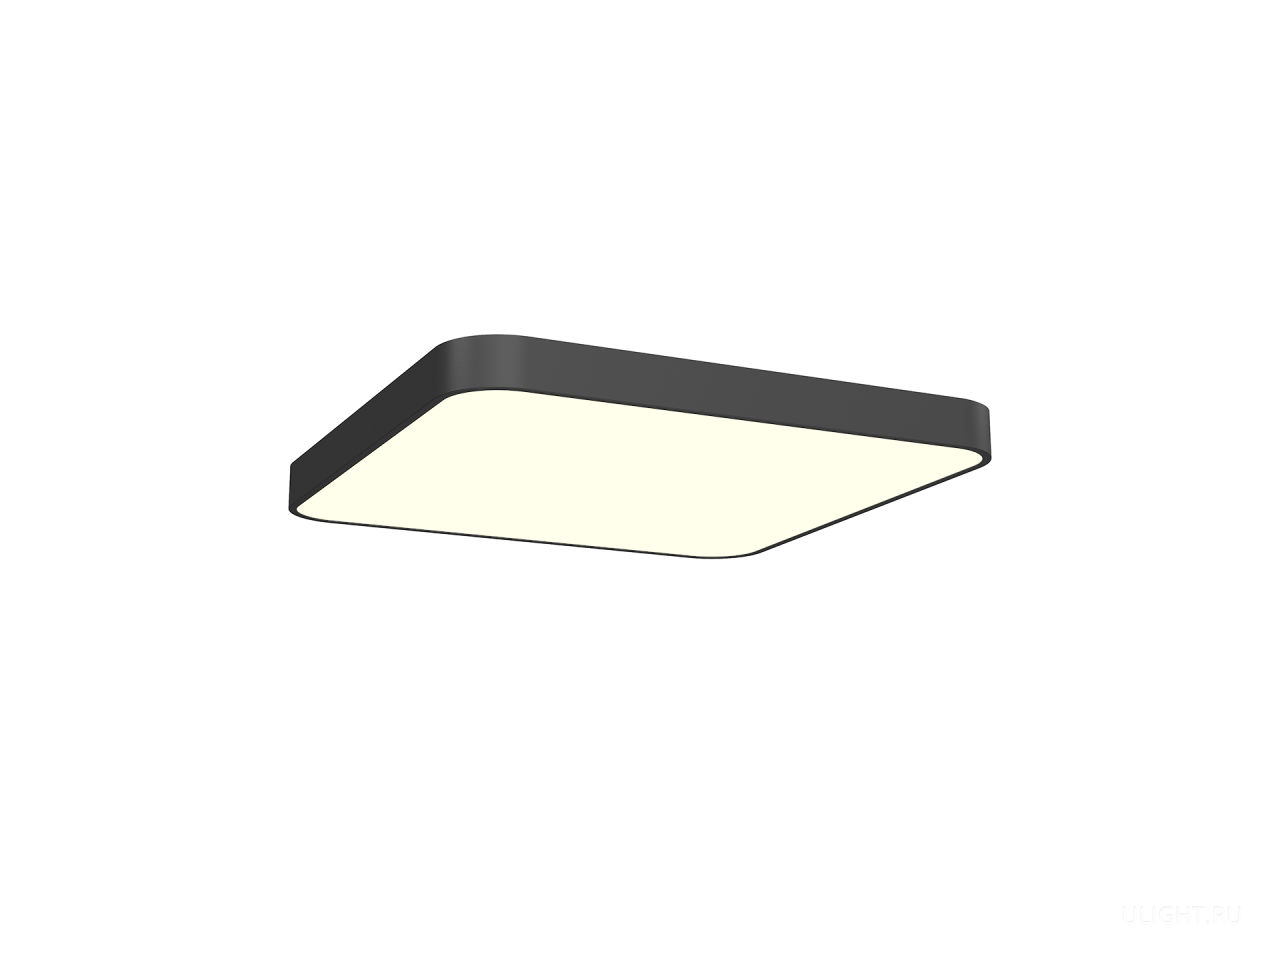 Светильник подвесной HOKASU Square-R B 4K (120W/625x625)